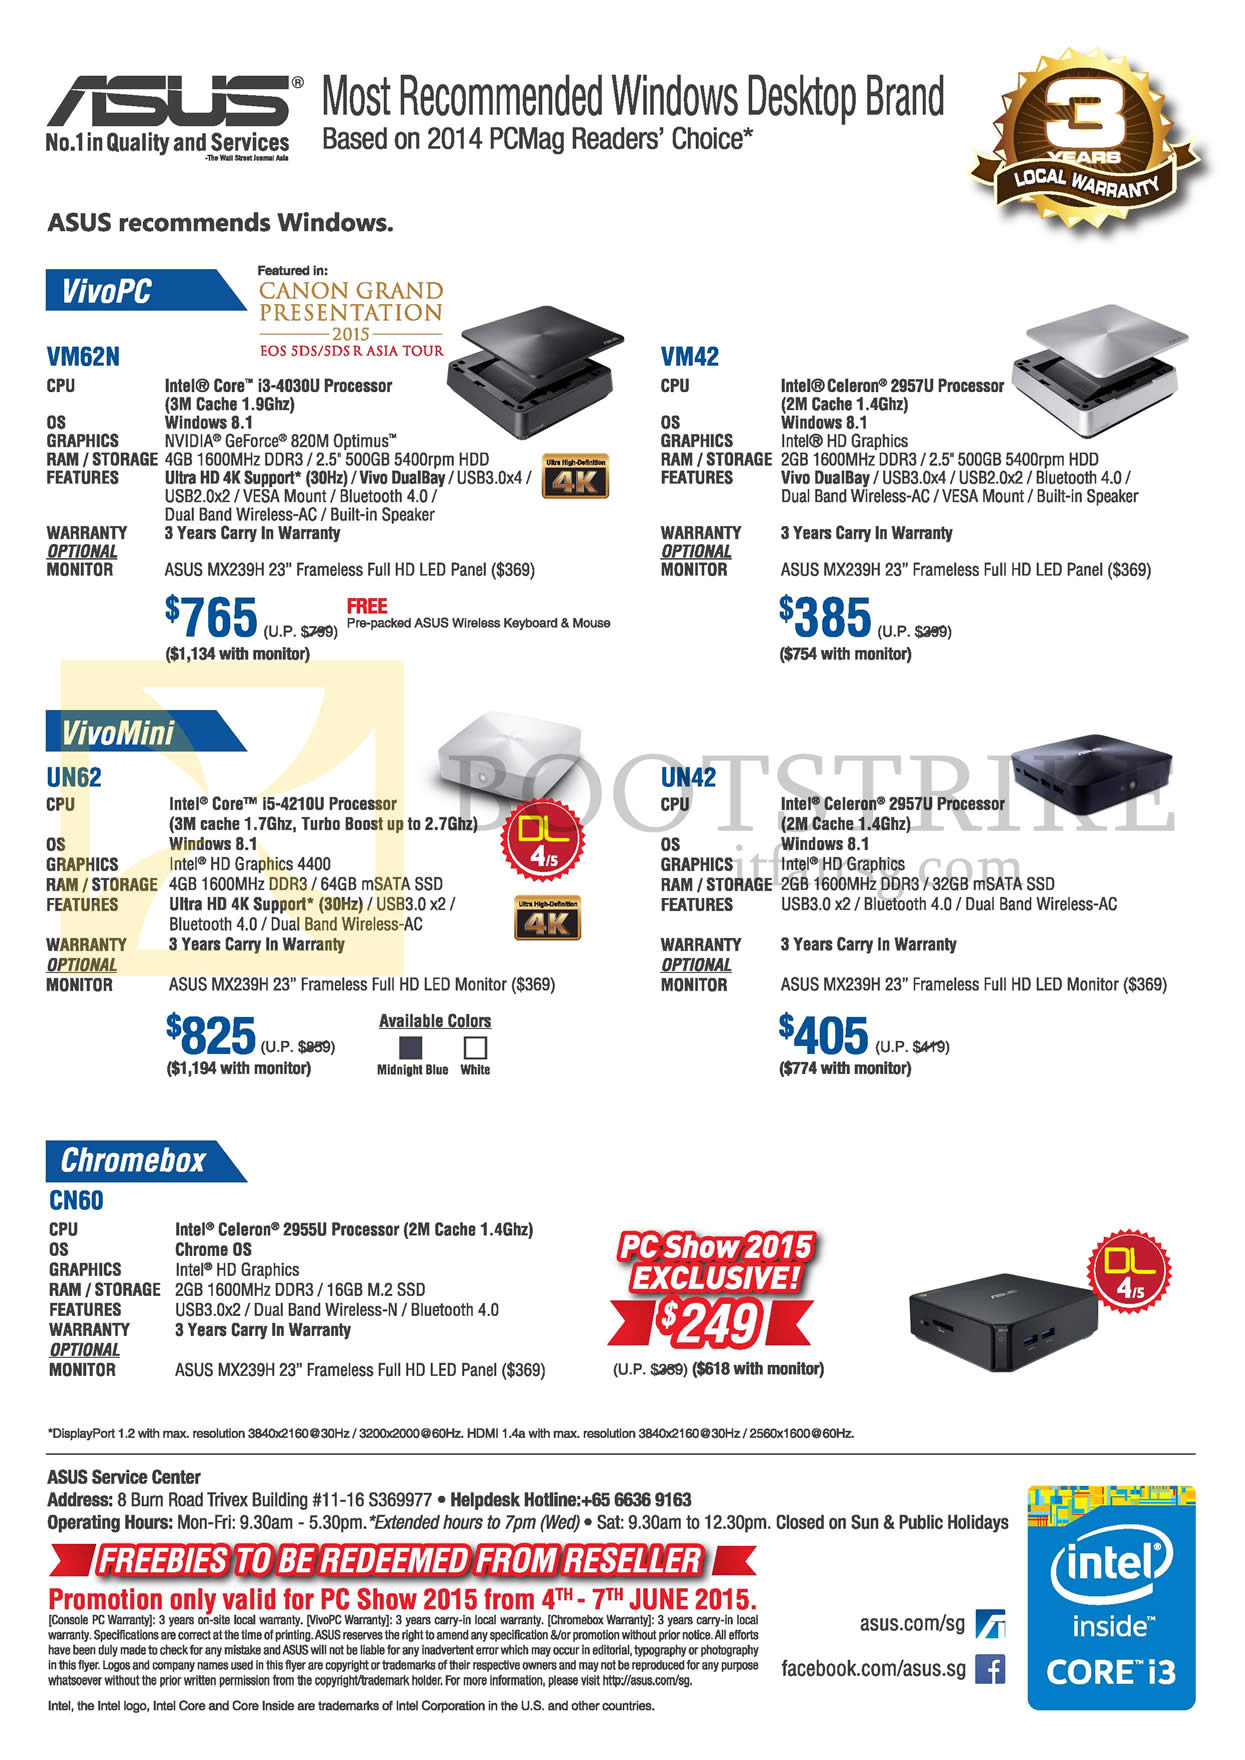 PC SHOW 2015 price list image brochure of ASUS Desktop PCs VivoPC, VM62N, VM42, VivoMini, UN62, UN42, Chromebox CN60